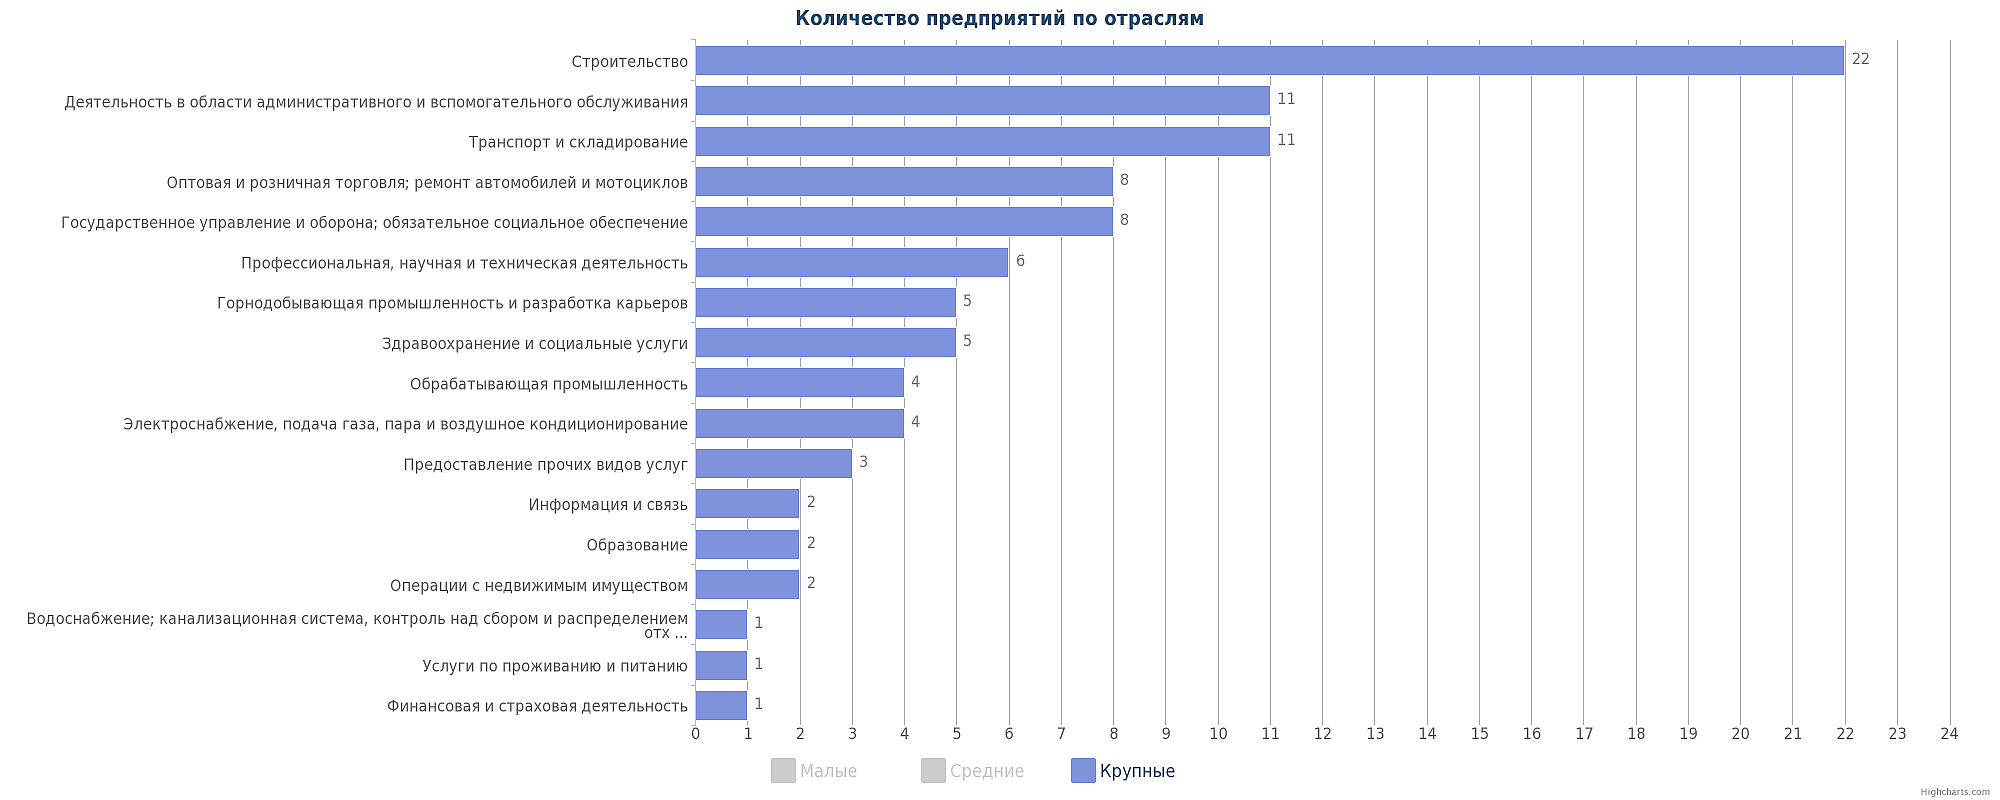 Крупные предприятия Атырау по отраслям - диаграмма